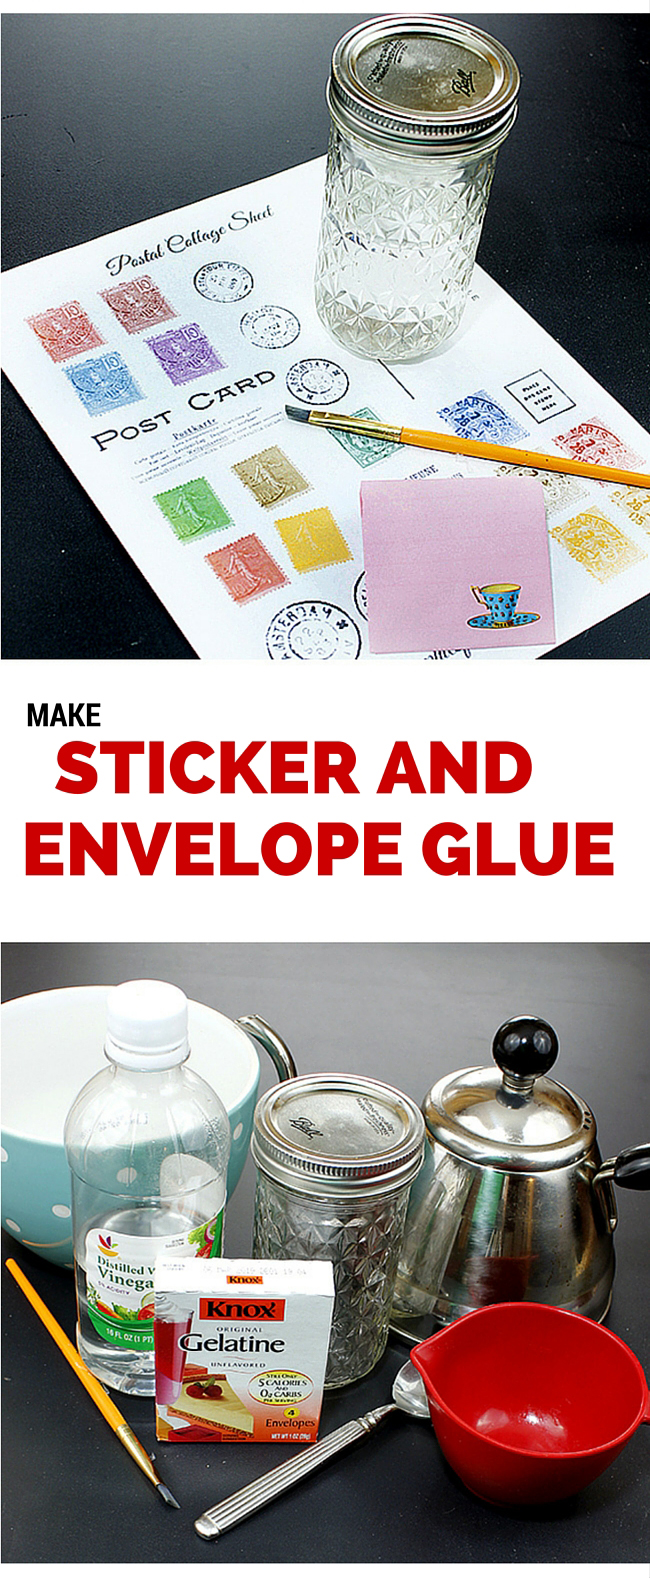 How to Make Envelope & Sticker Glue